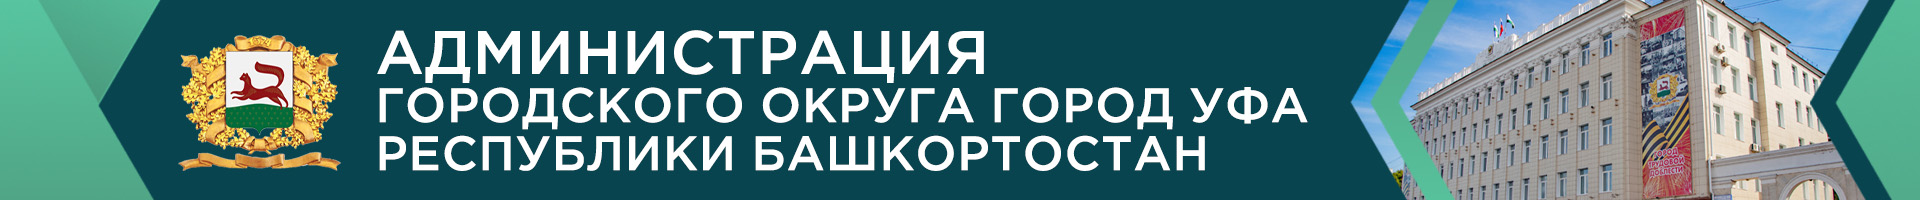 Администрация городского округа город Уфа